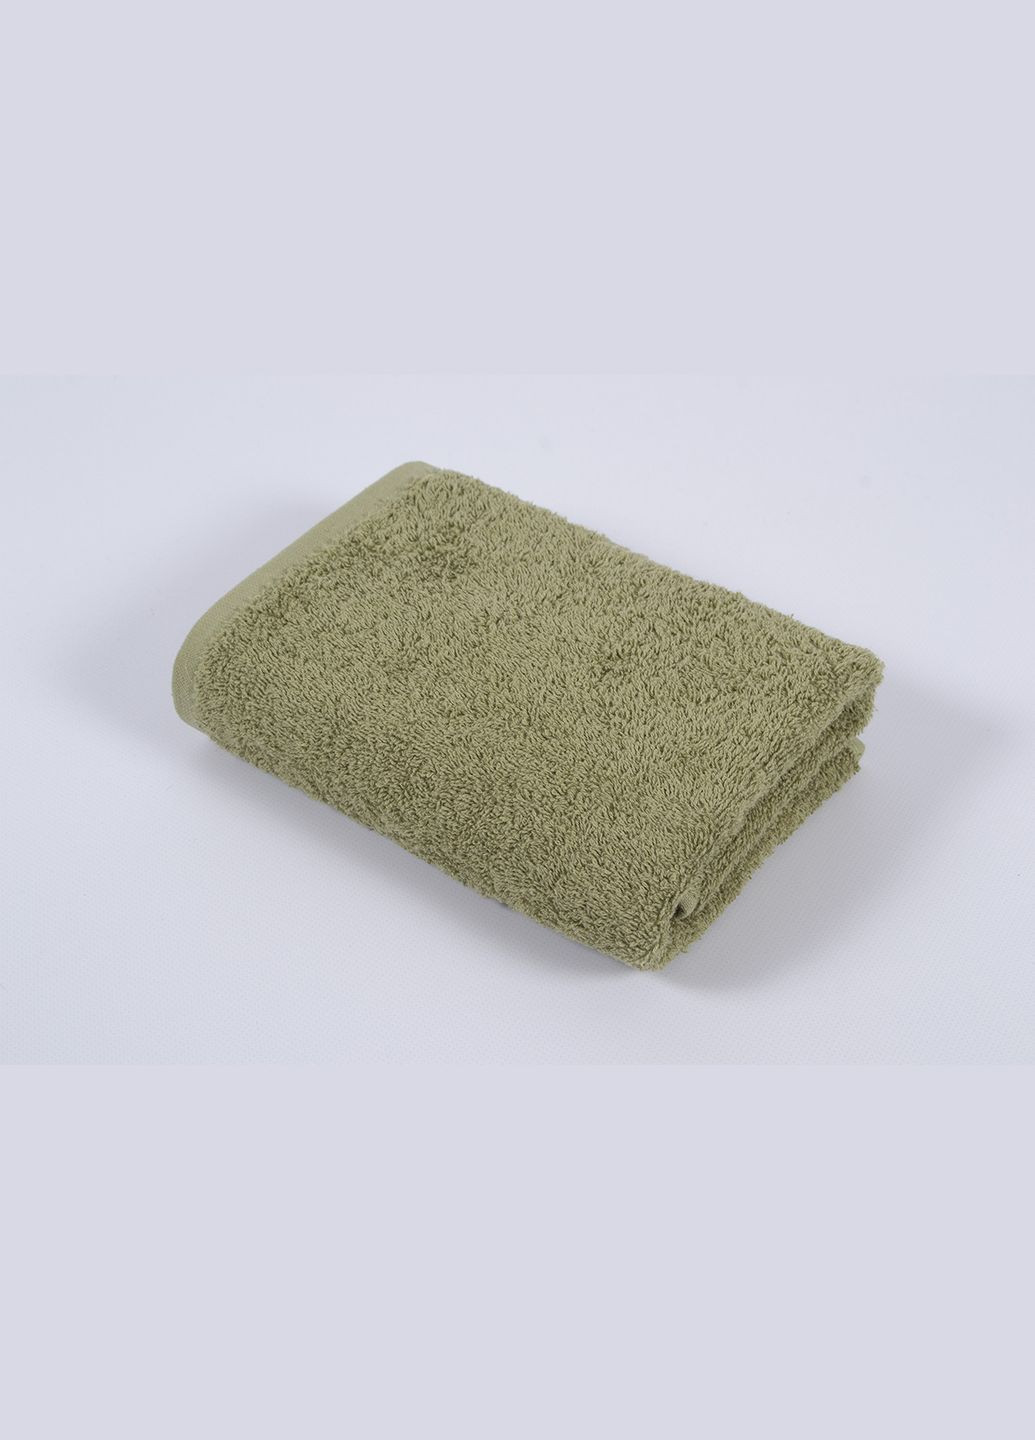 Iris Home полотенце отель - green olive 50*90 440 г/м2 комбинированный производство -